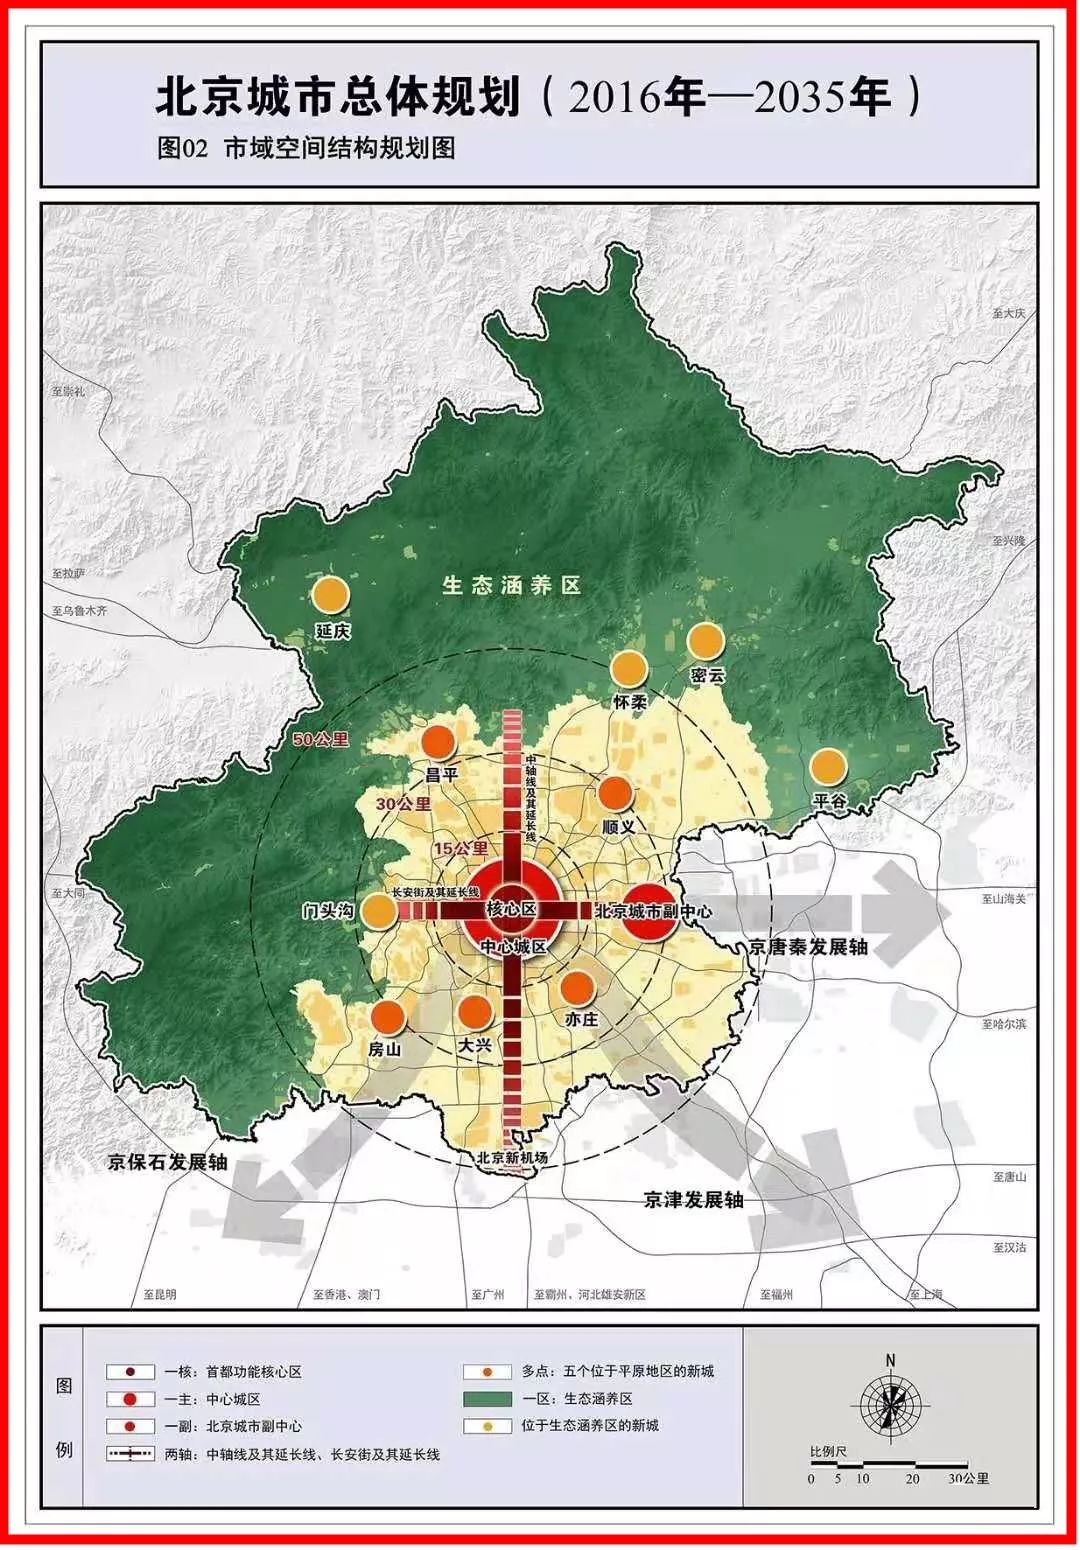 着力改变单中心集聚的发展模式,构建北京新的城市发展格局